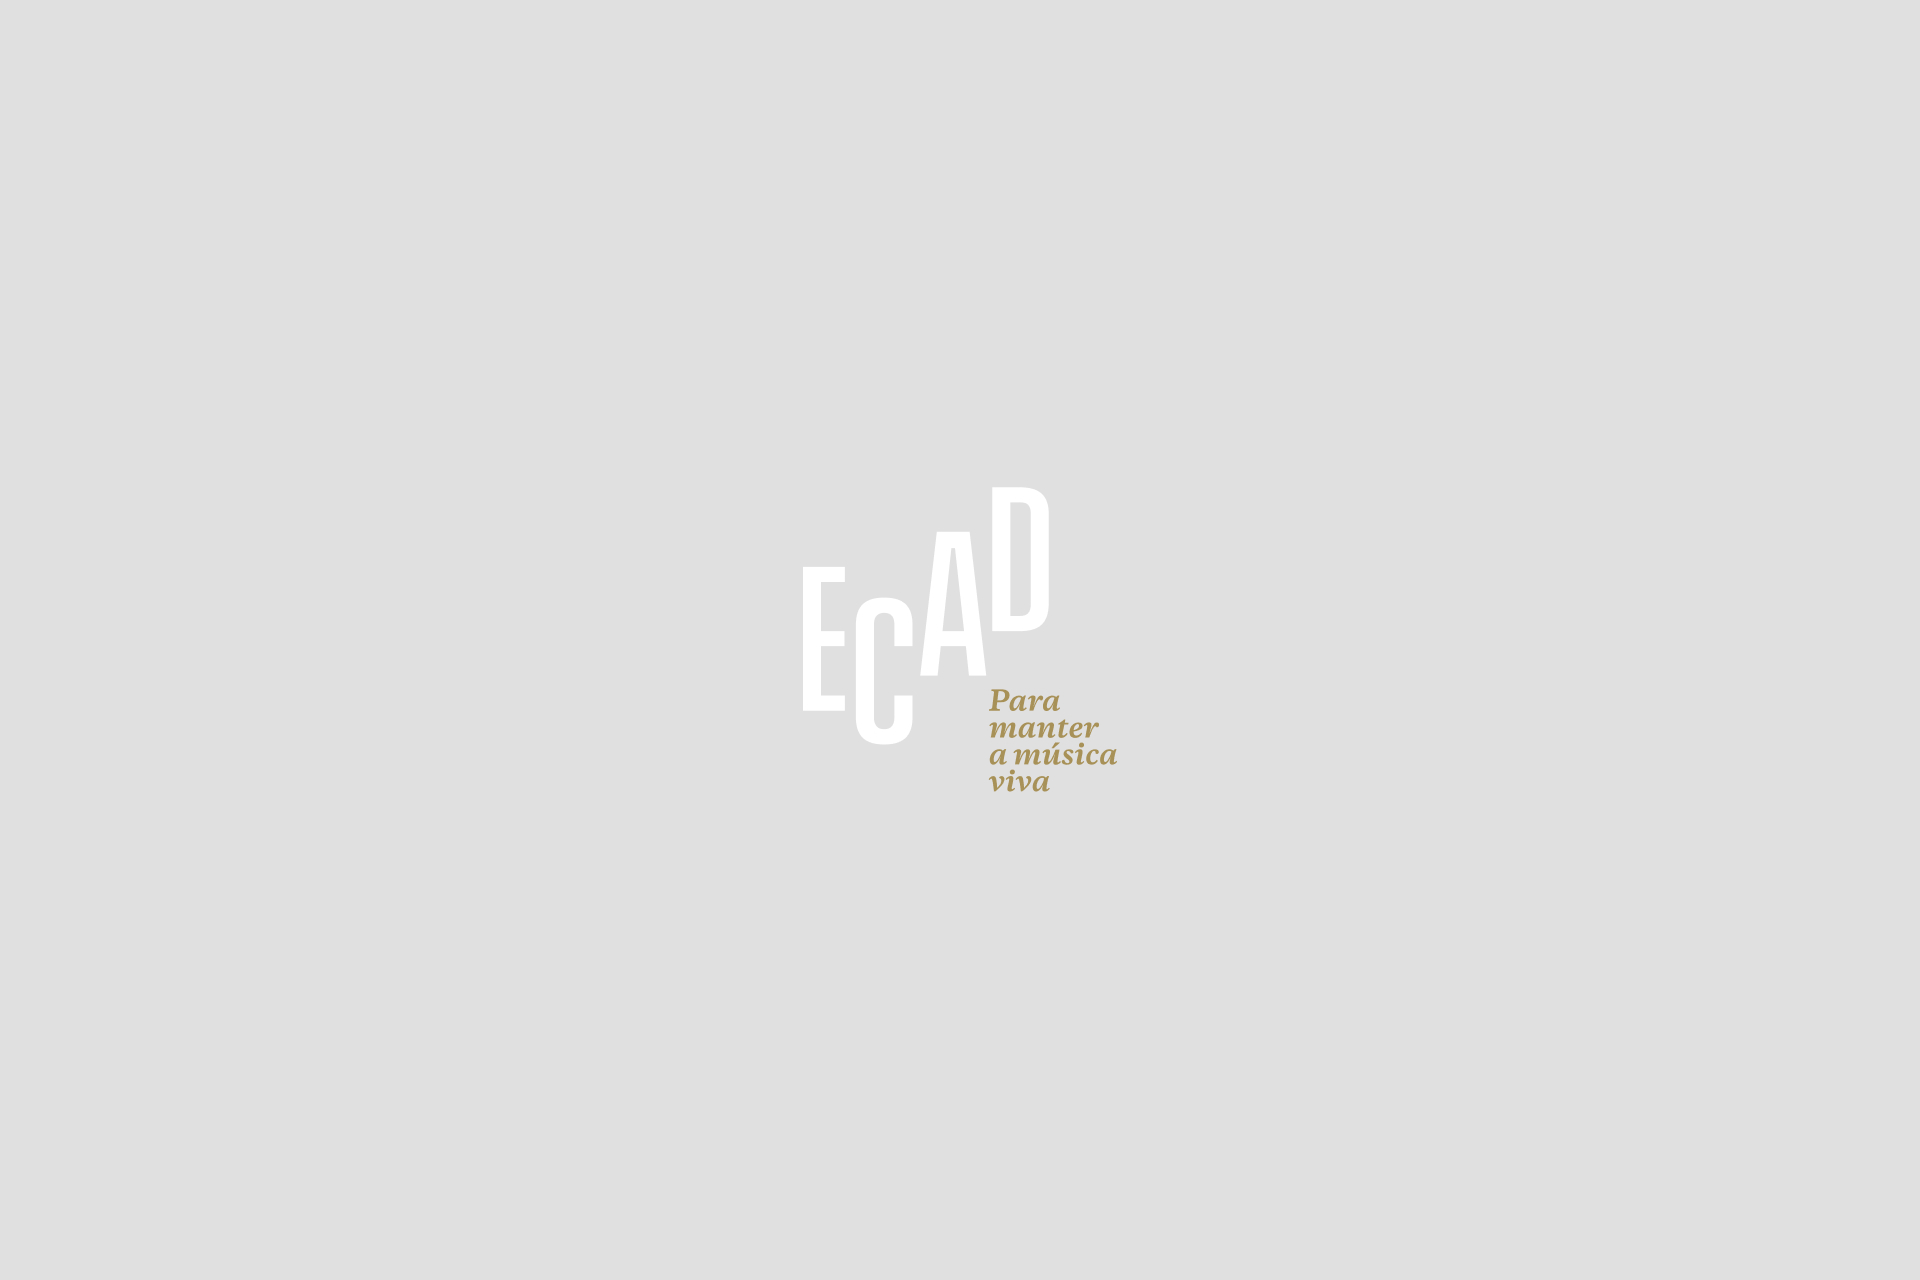 Ecad adere a campanha com isenção de taxas de direitos autorais